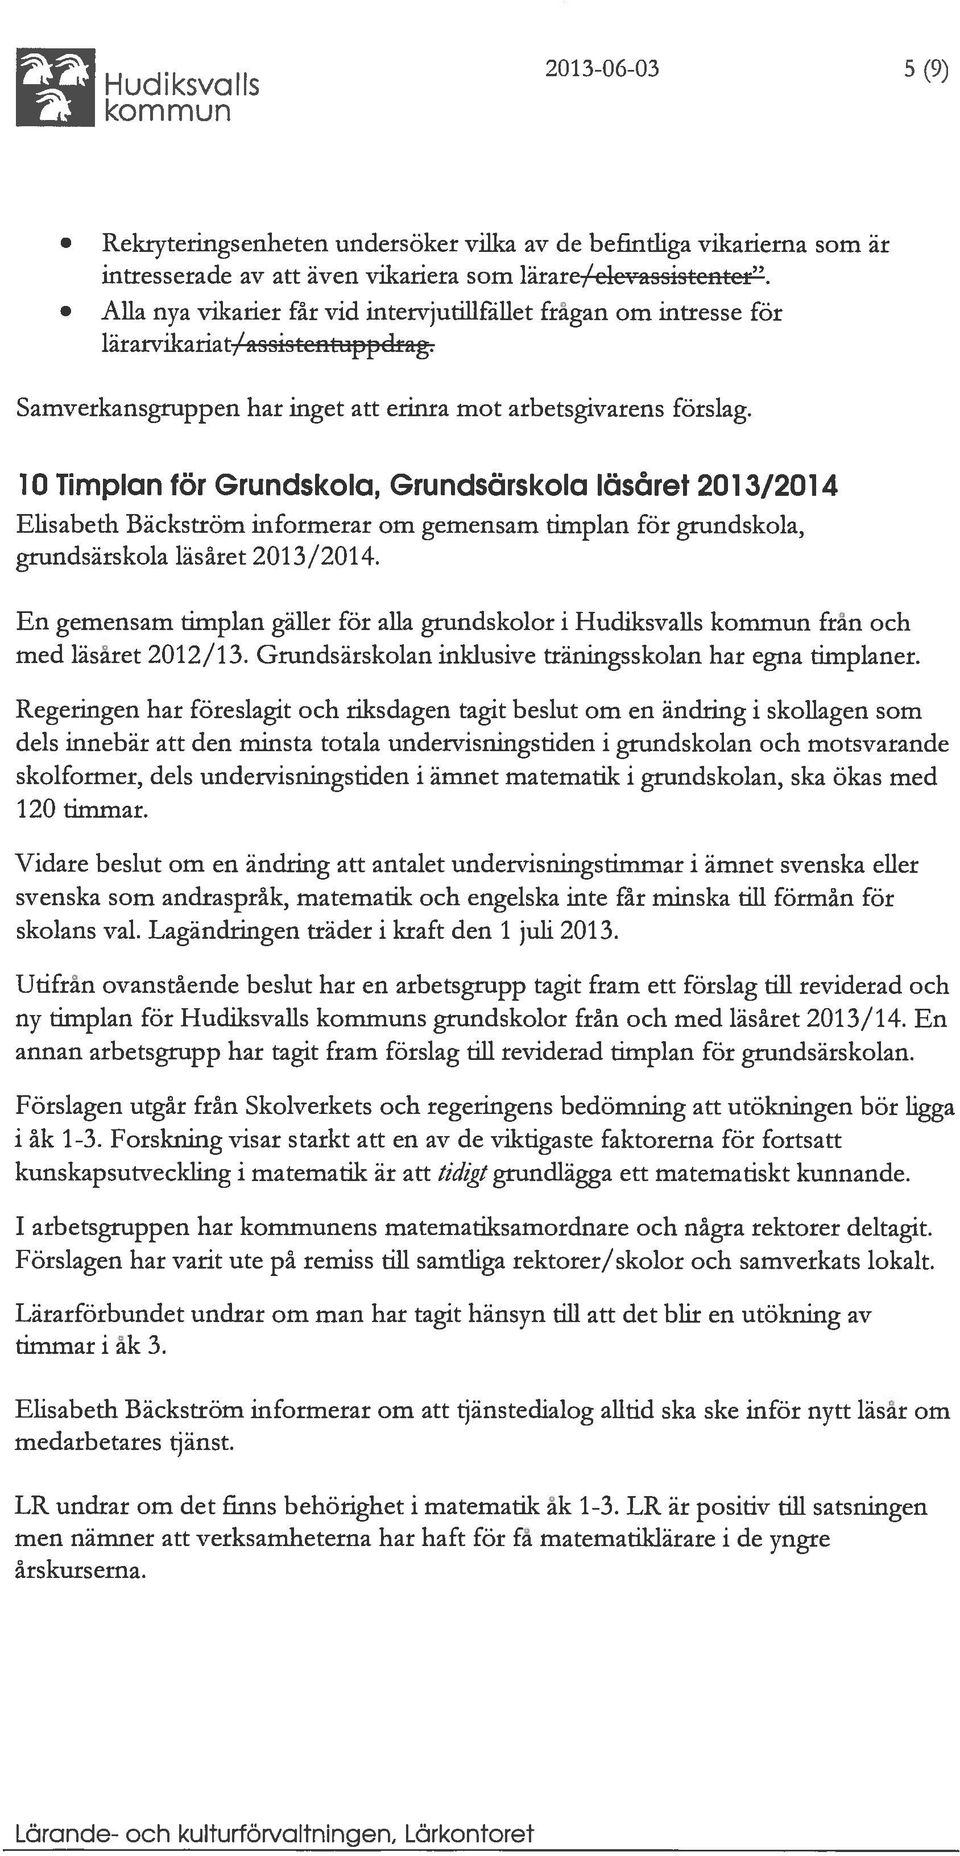 10 Timplan för Grundskola, Grundsärskola läsåret 2013/2014 Elisabeth Bäckström informerar om gemensam timplan för grundskola, grundsärskola läsåret 2013/2014.